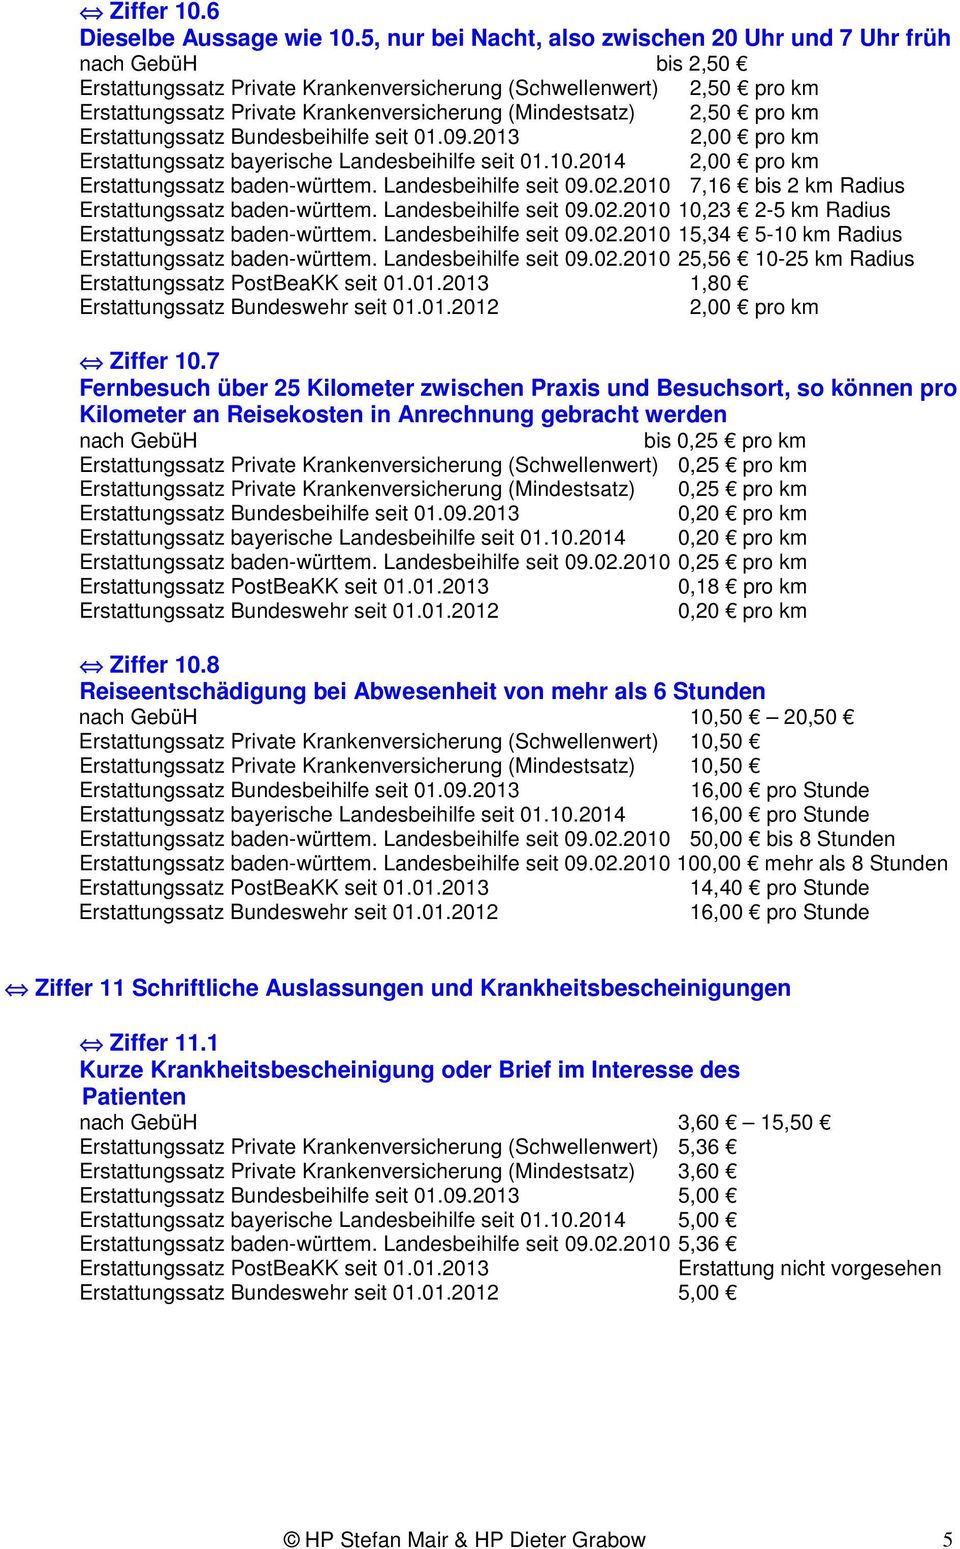 (Mindestsatz) 2,50 pro km 2,00 pro km Erstattungssatz bayerische Landesbeihilfe seit 01.10.2014 2,00 pro km Erstattungssatz baden-württem. Landesbeihilfe seit 09.02.